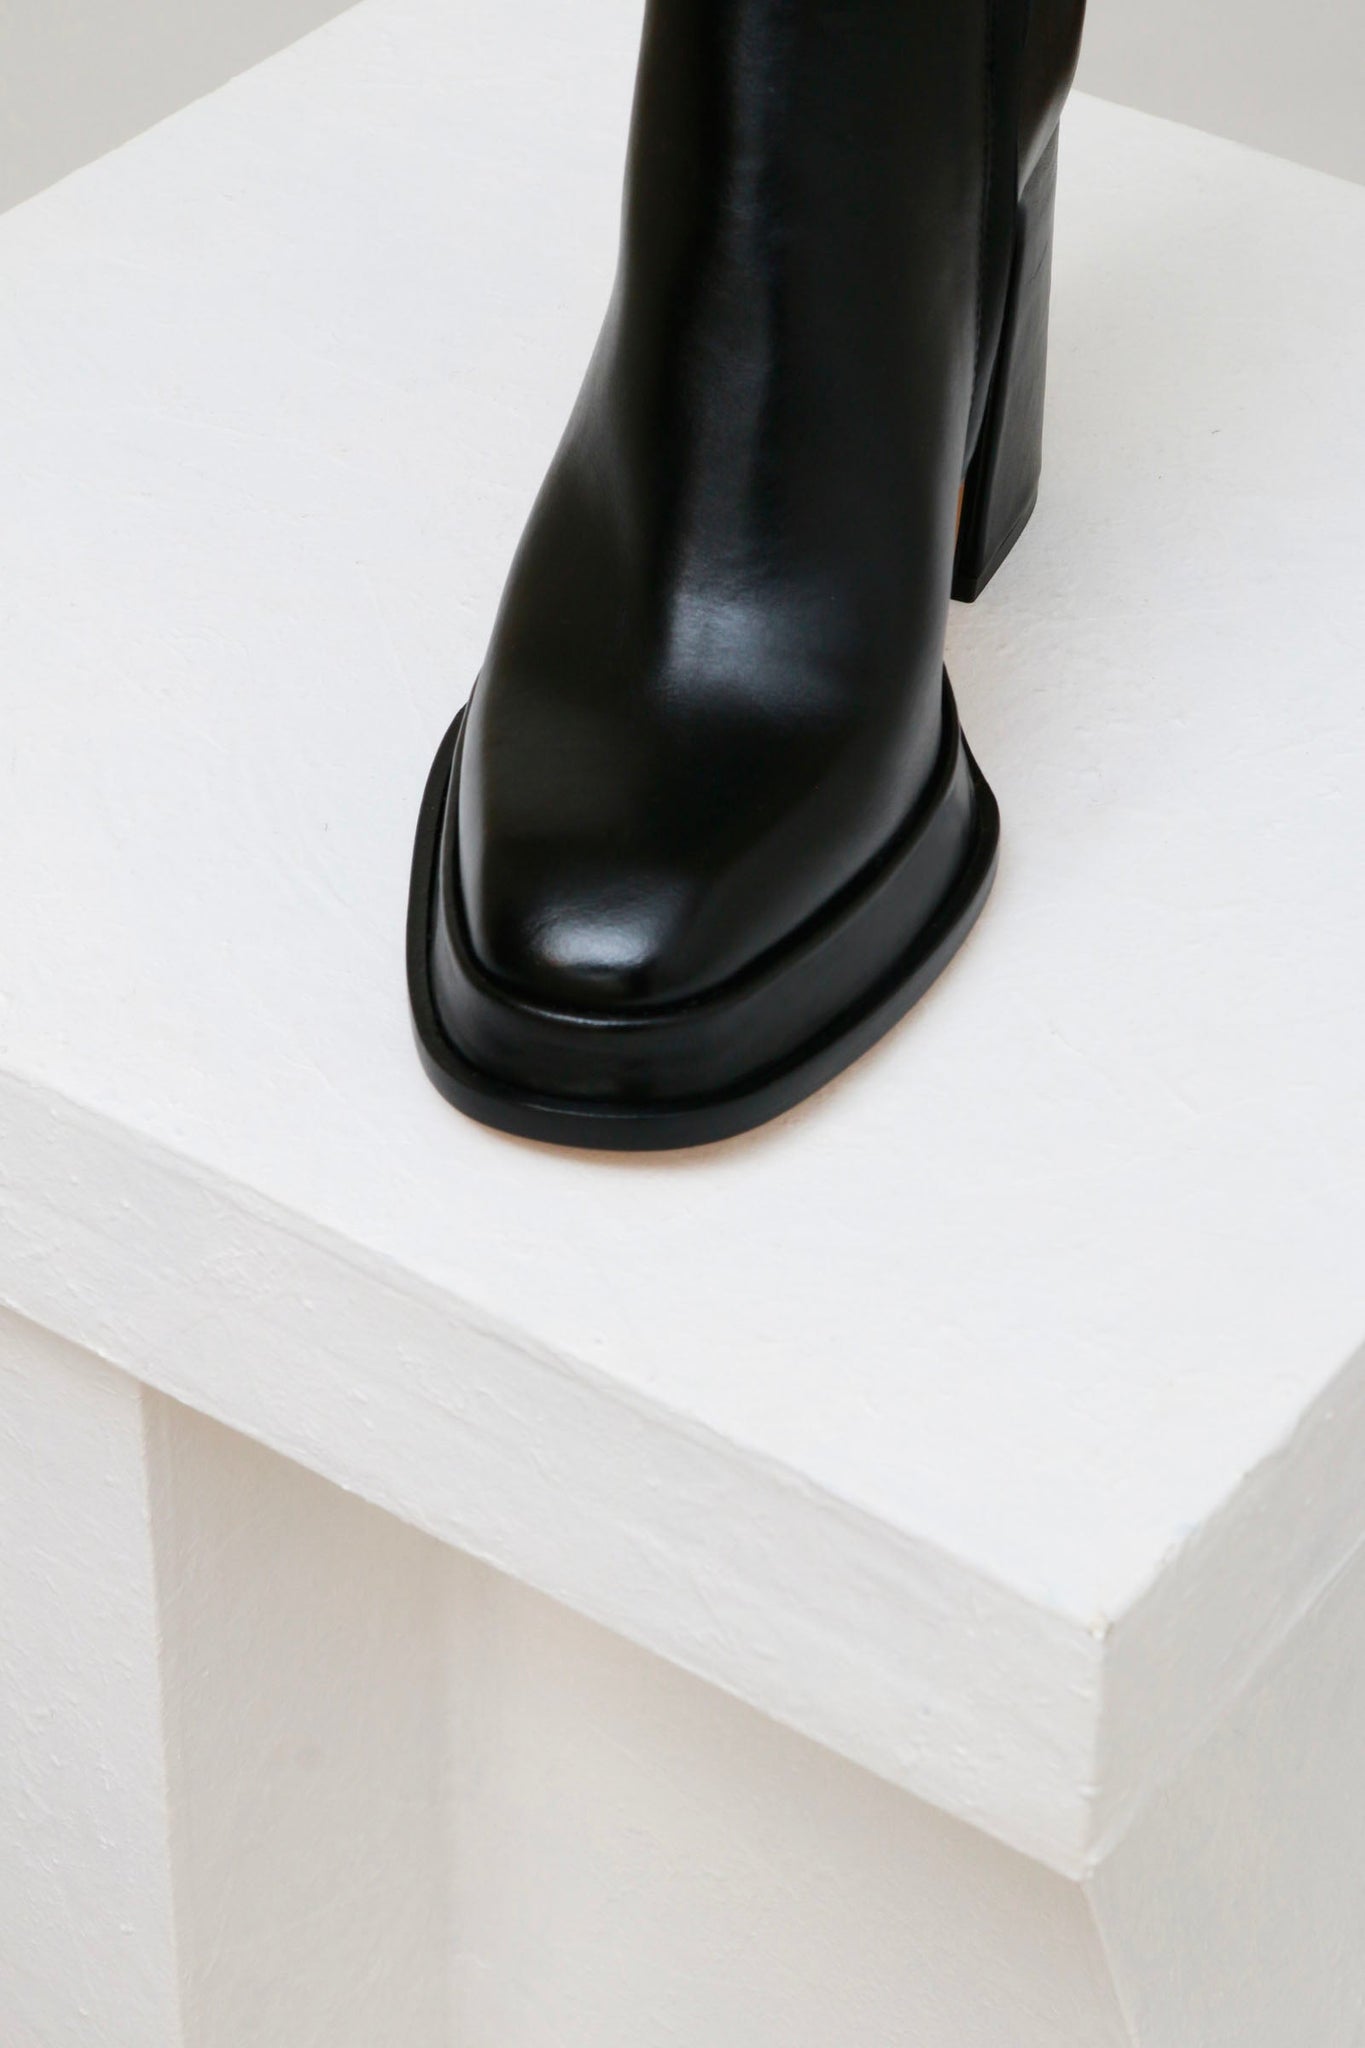 Souliers Martinez Shoes CHUECA - Black Leather Platform Boots 